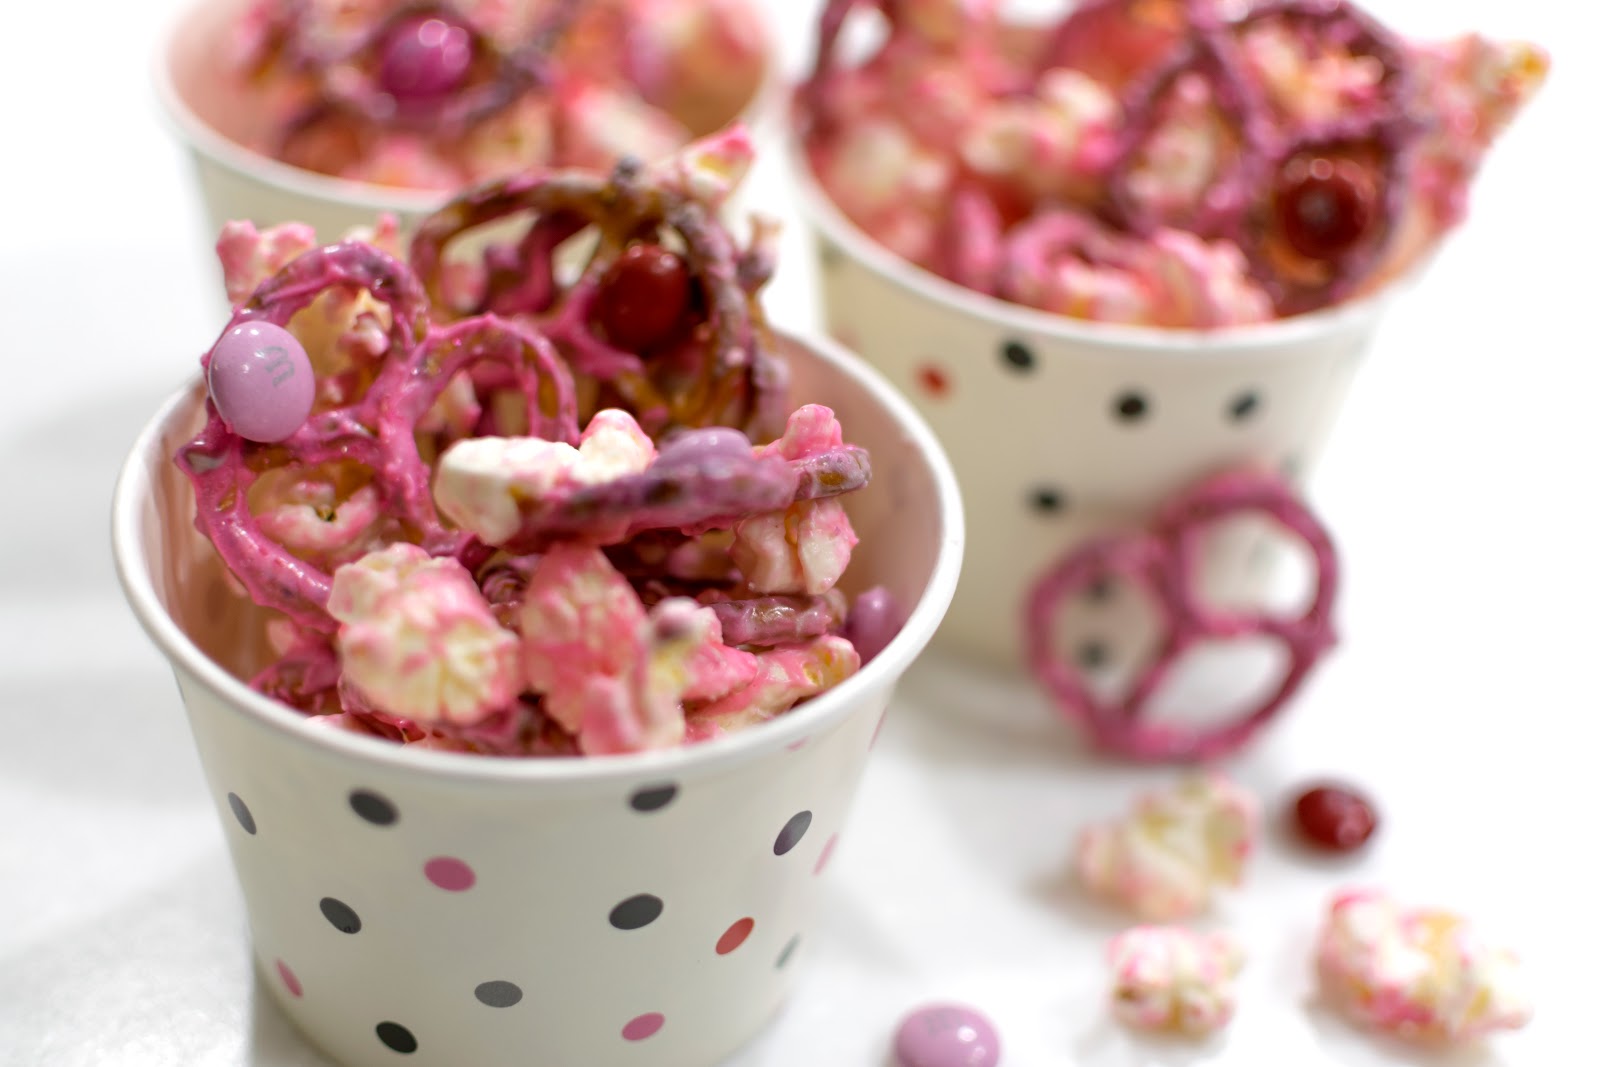 valentine's valentines valentine day snack treat dessert idea school popcorn pretzels m&ms chocolate pink mix